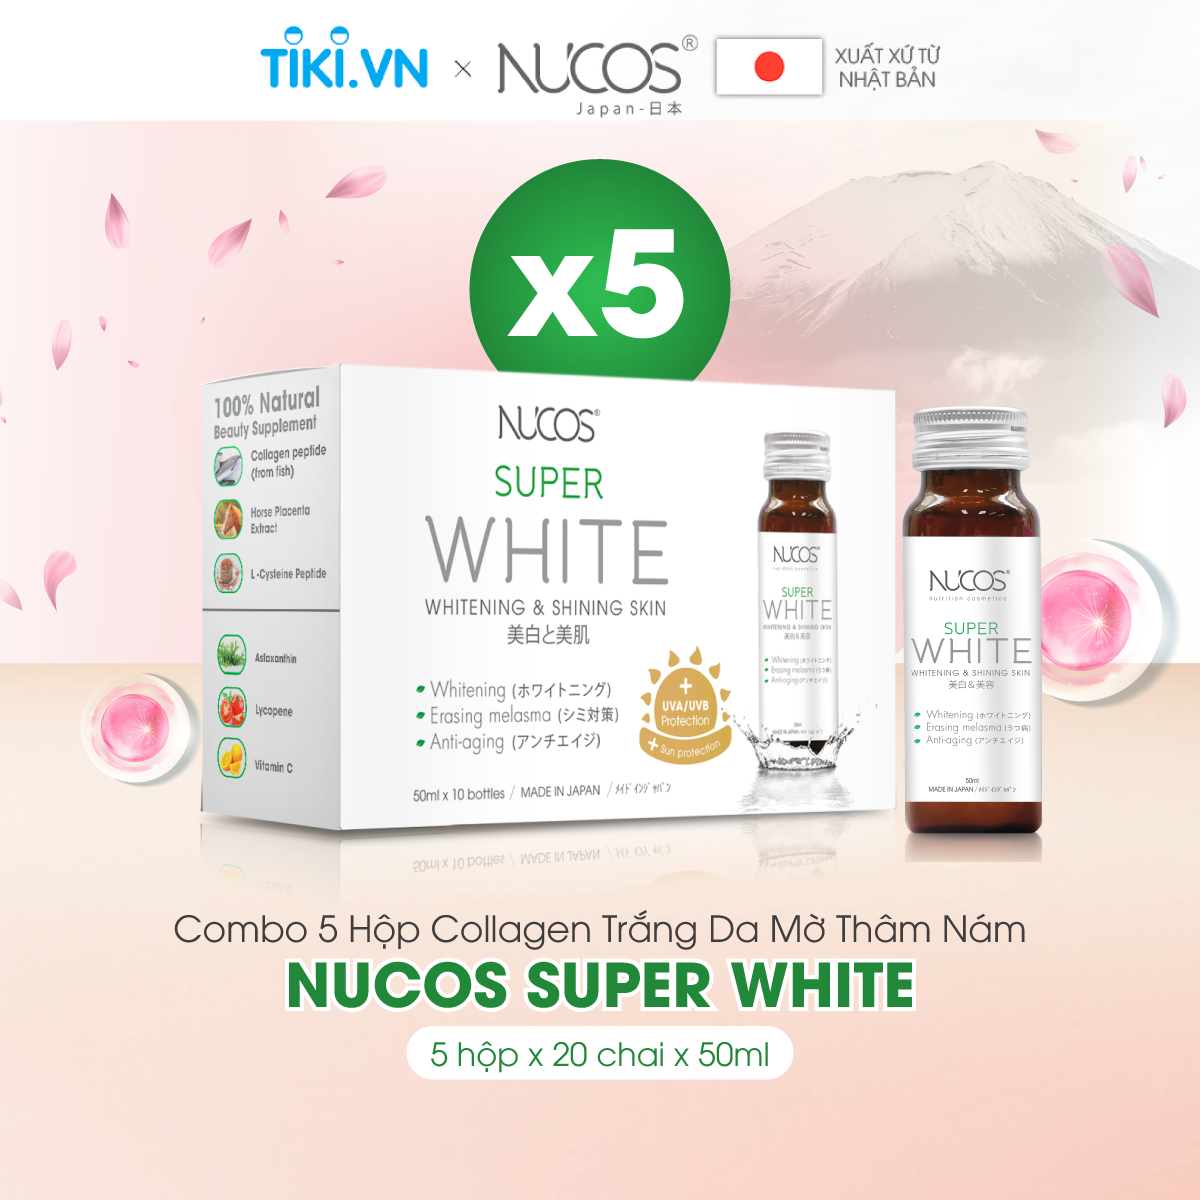 Combo 5 hộp Collagen uống hỗ trợ trắng da mờ thâm nám Nucos Super White​ 10 chai x 50ml